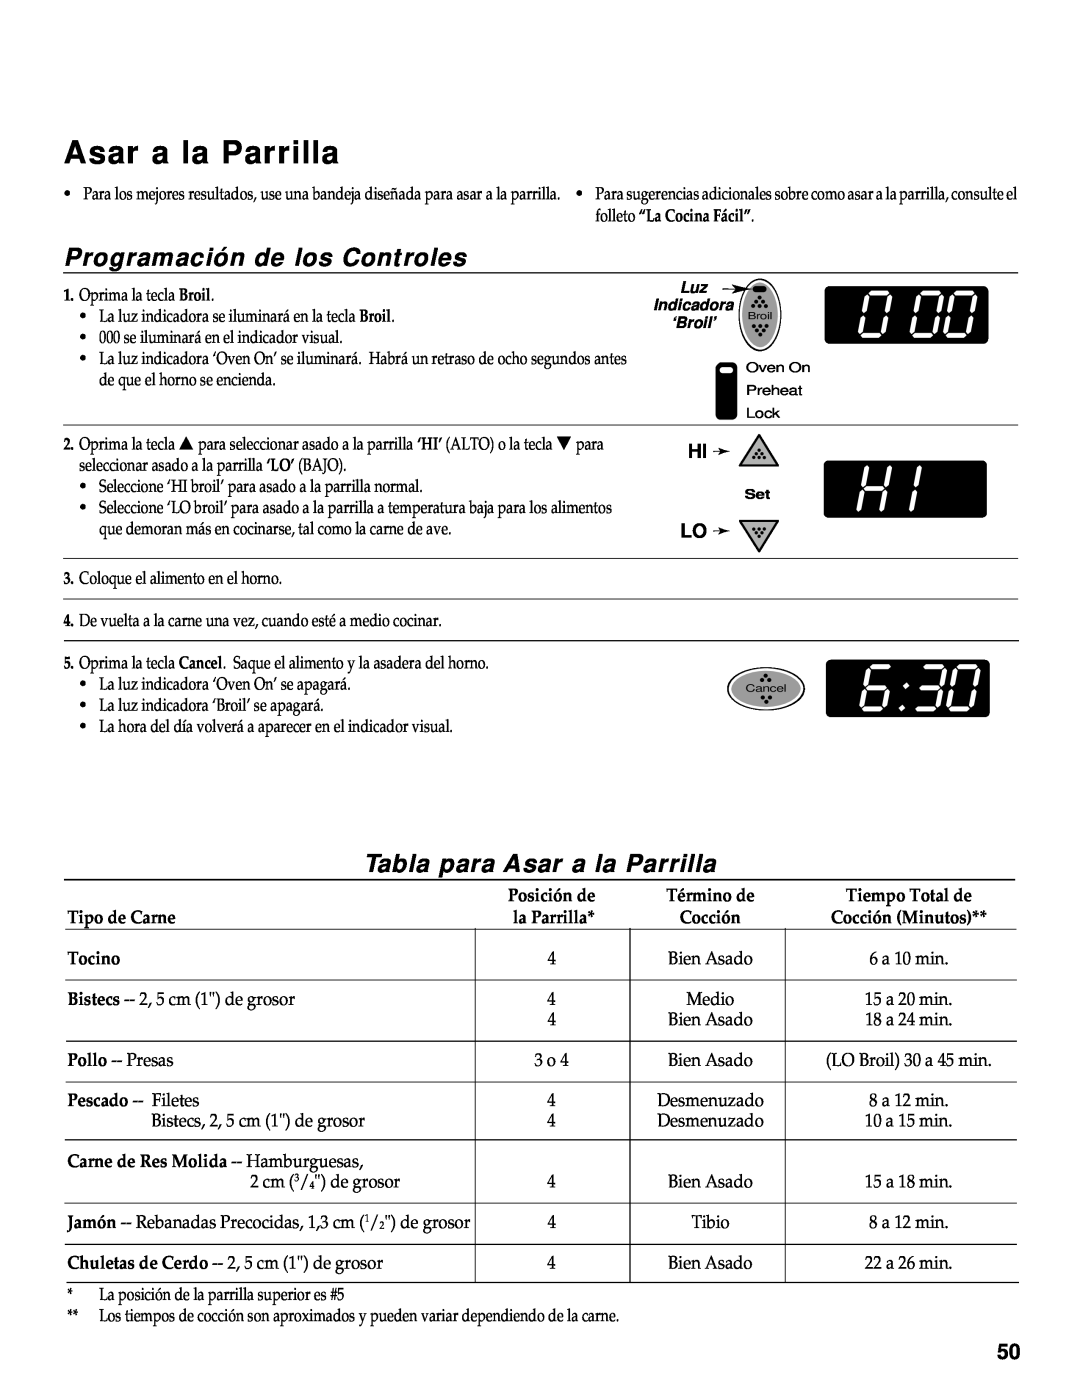 Maytag RS-1 manual Tabla para Asar a la Parrilla, Programación de los Controles, Tipo de Carne, Tocino 